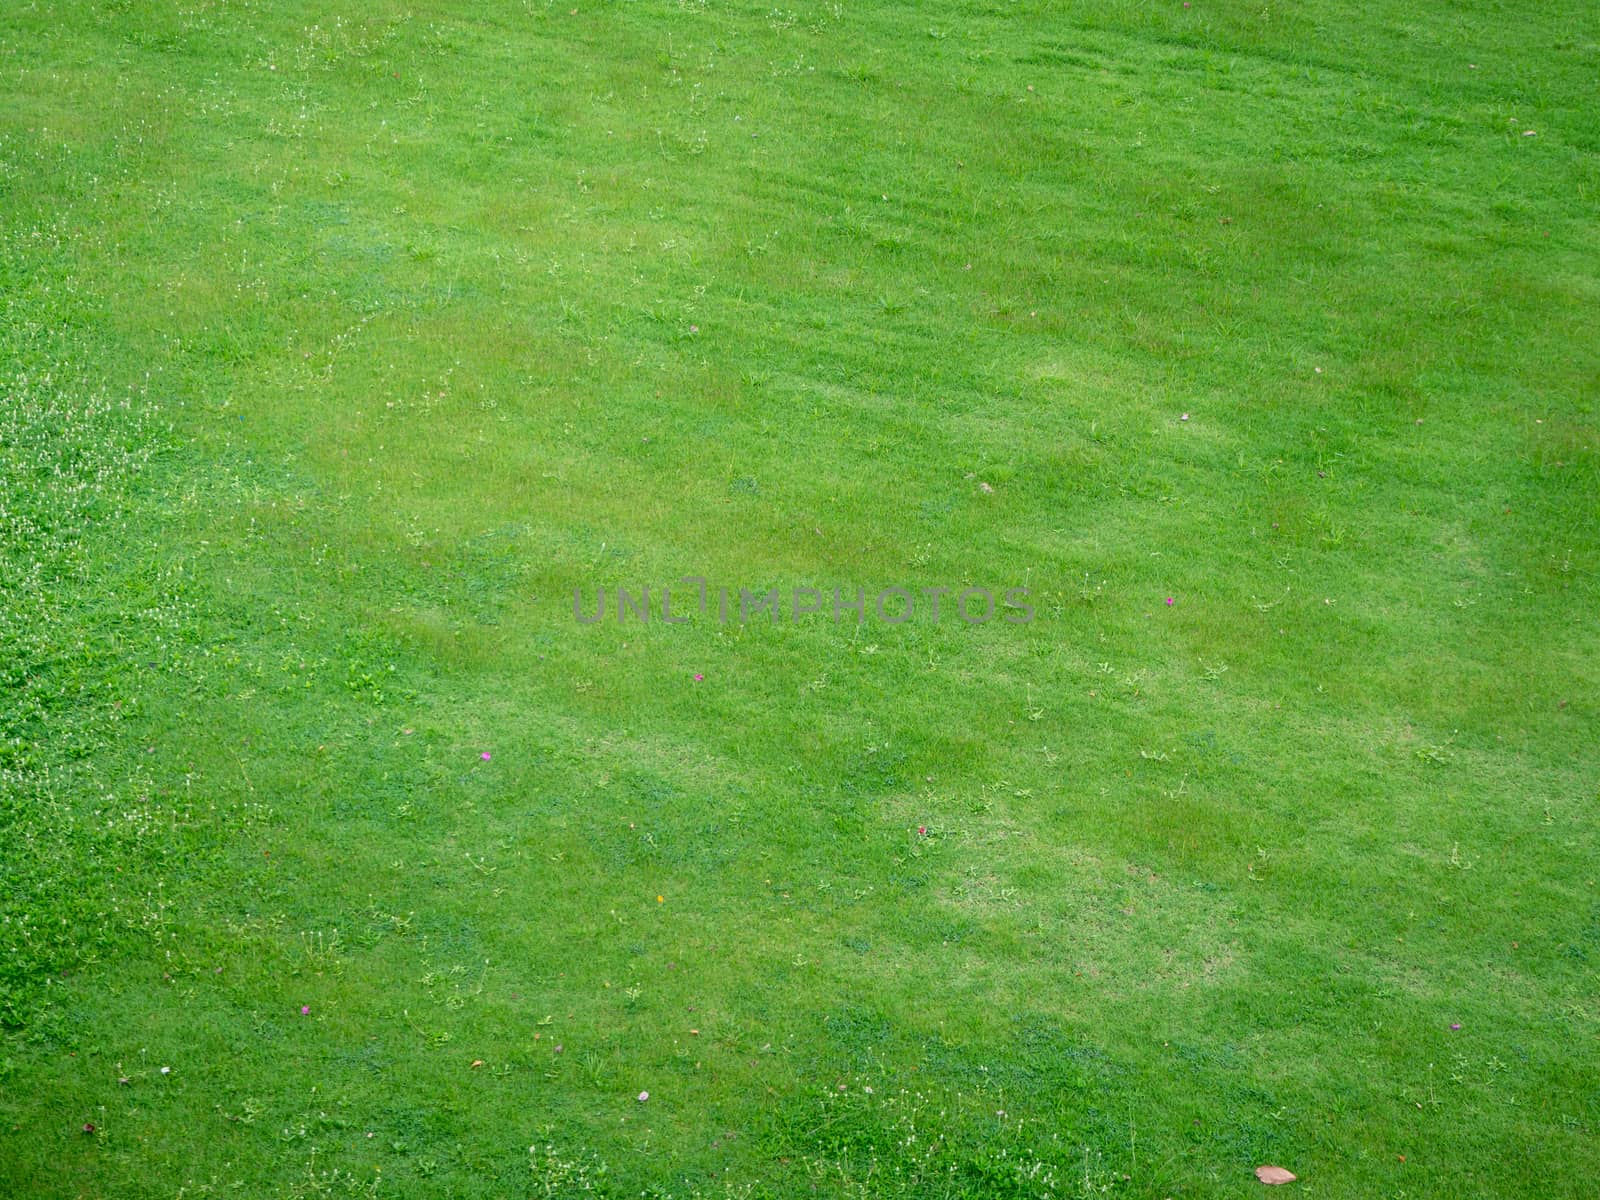 Green grass texture background, Top view of grass garden Ideal c by shutterbird